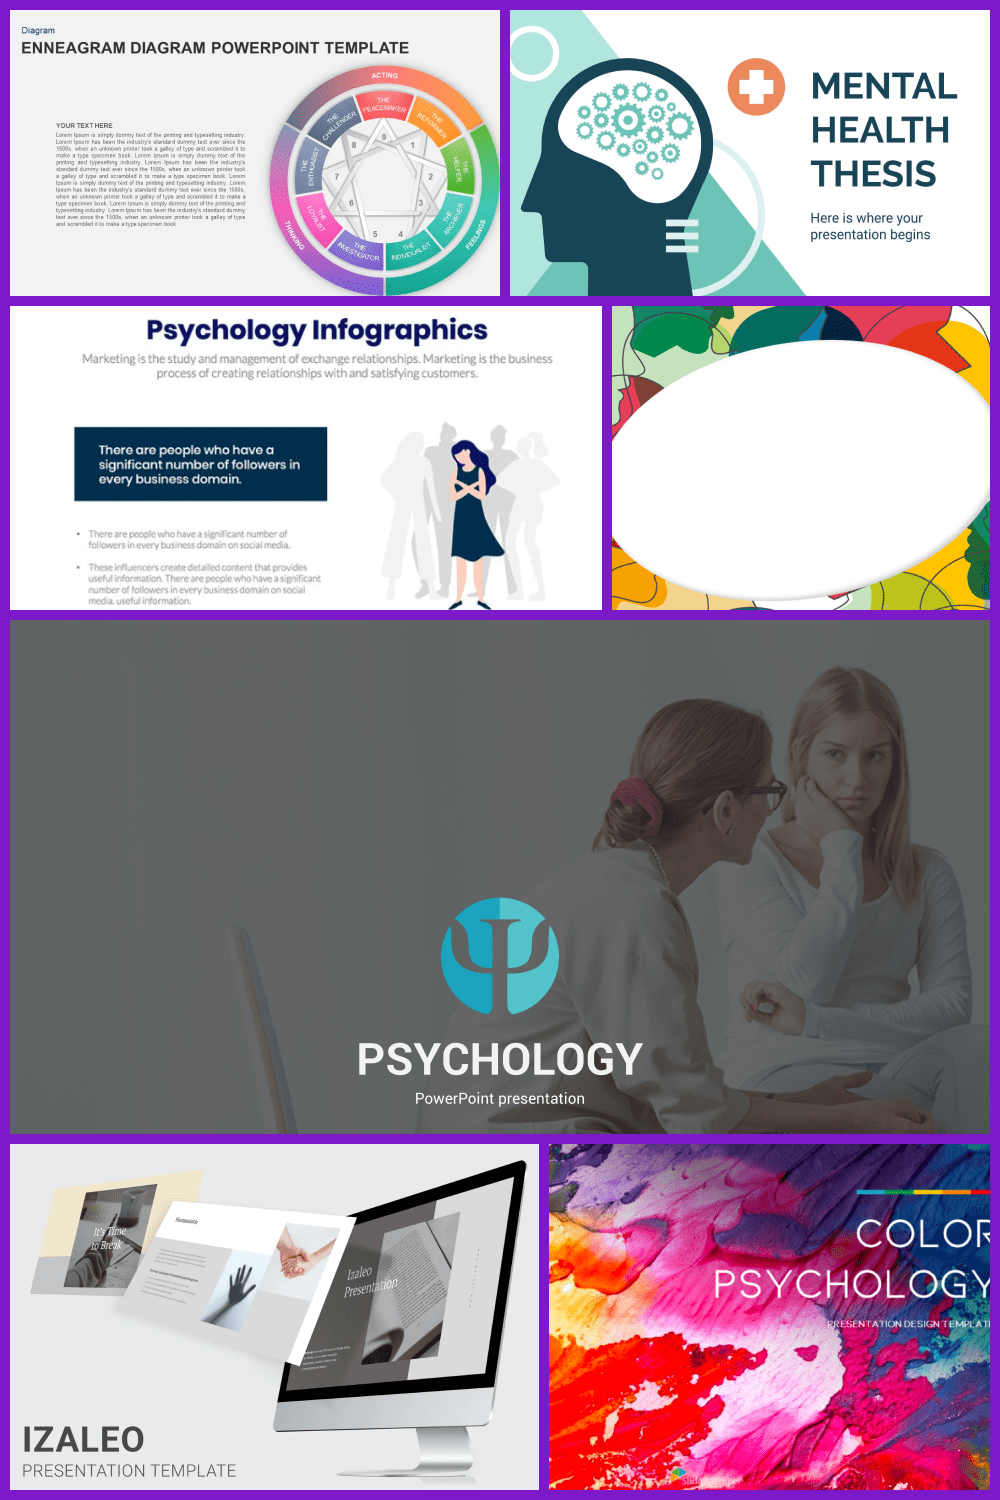 Best Psychology PowerPoint Templates pinterest.